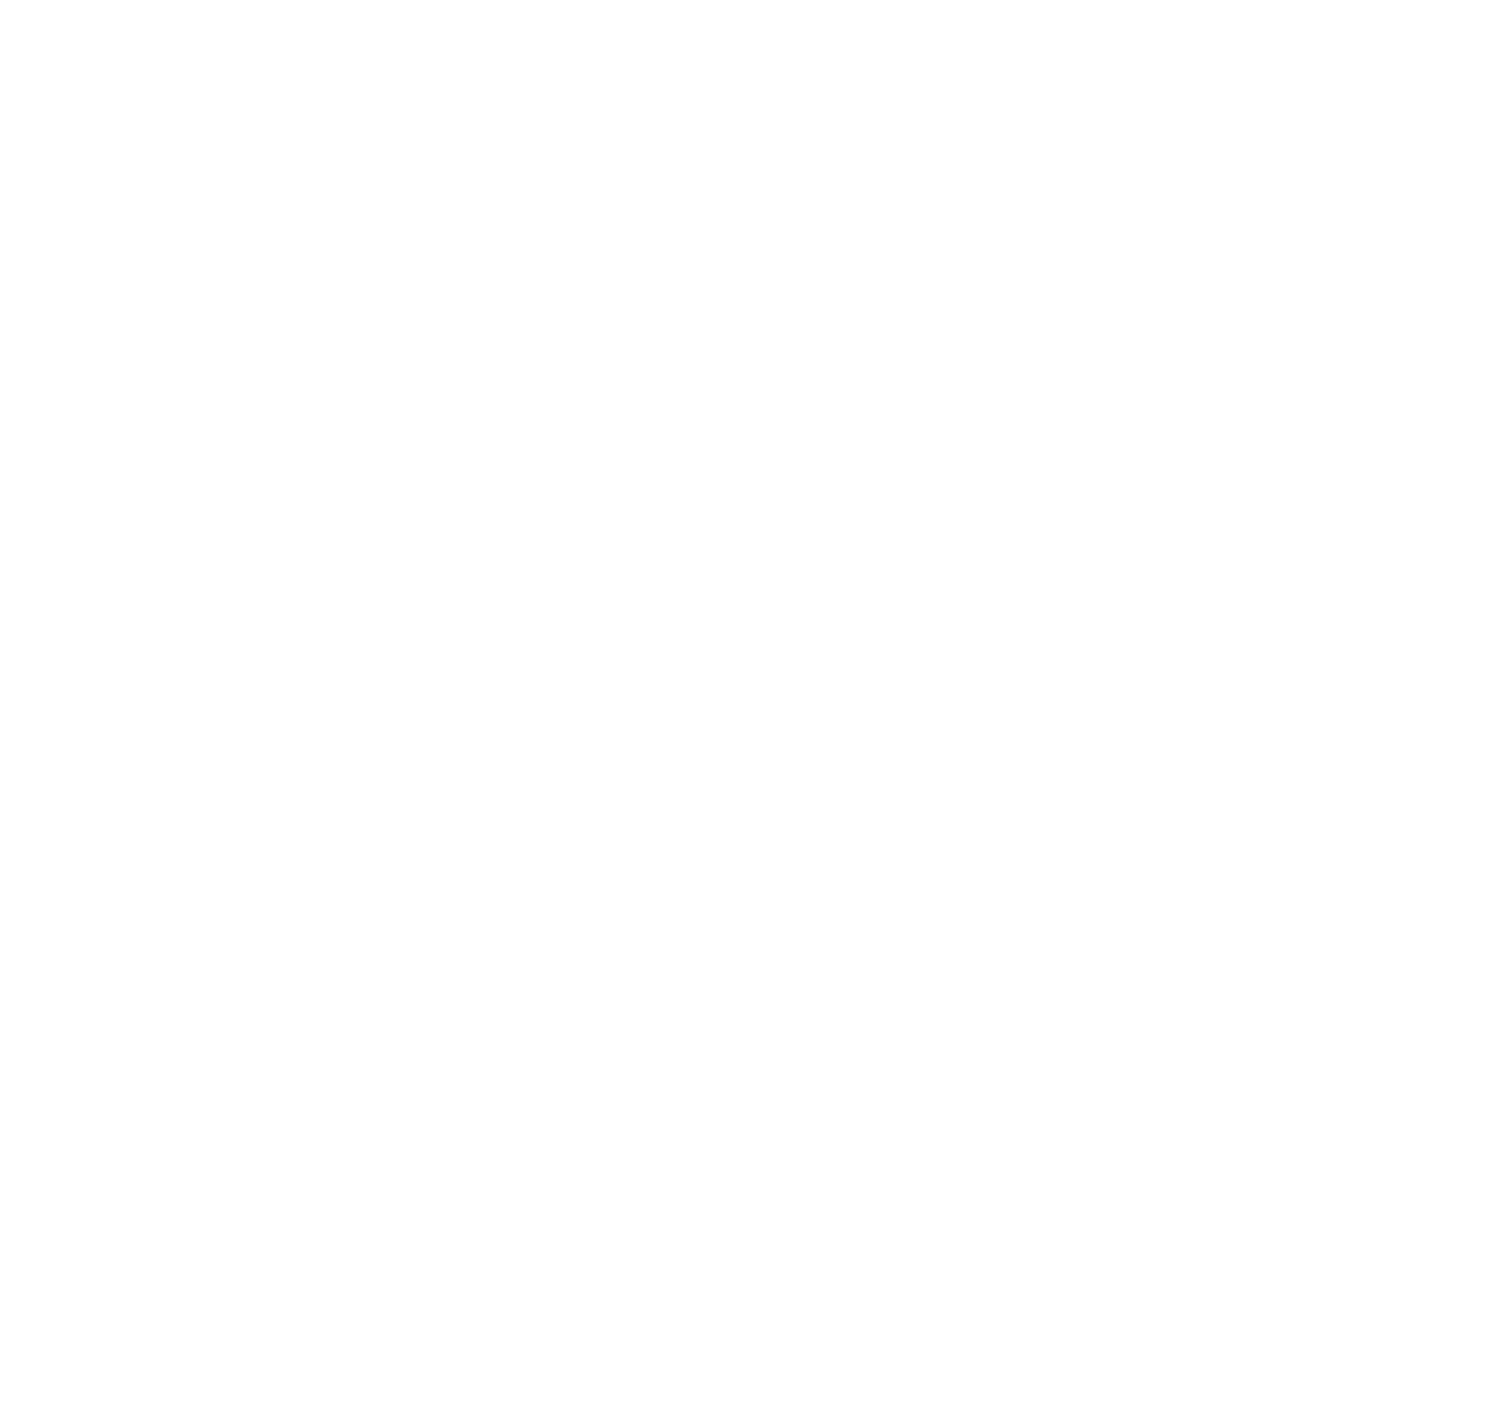 Macquarie logo pour fonds sombres (PNG transparent)